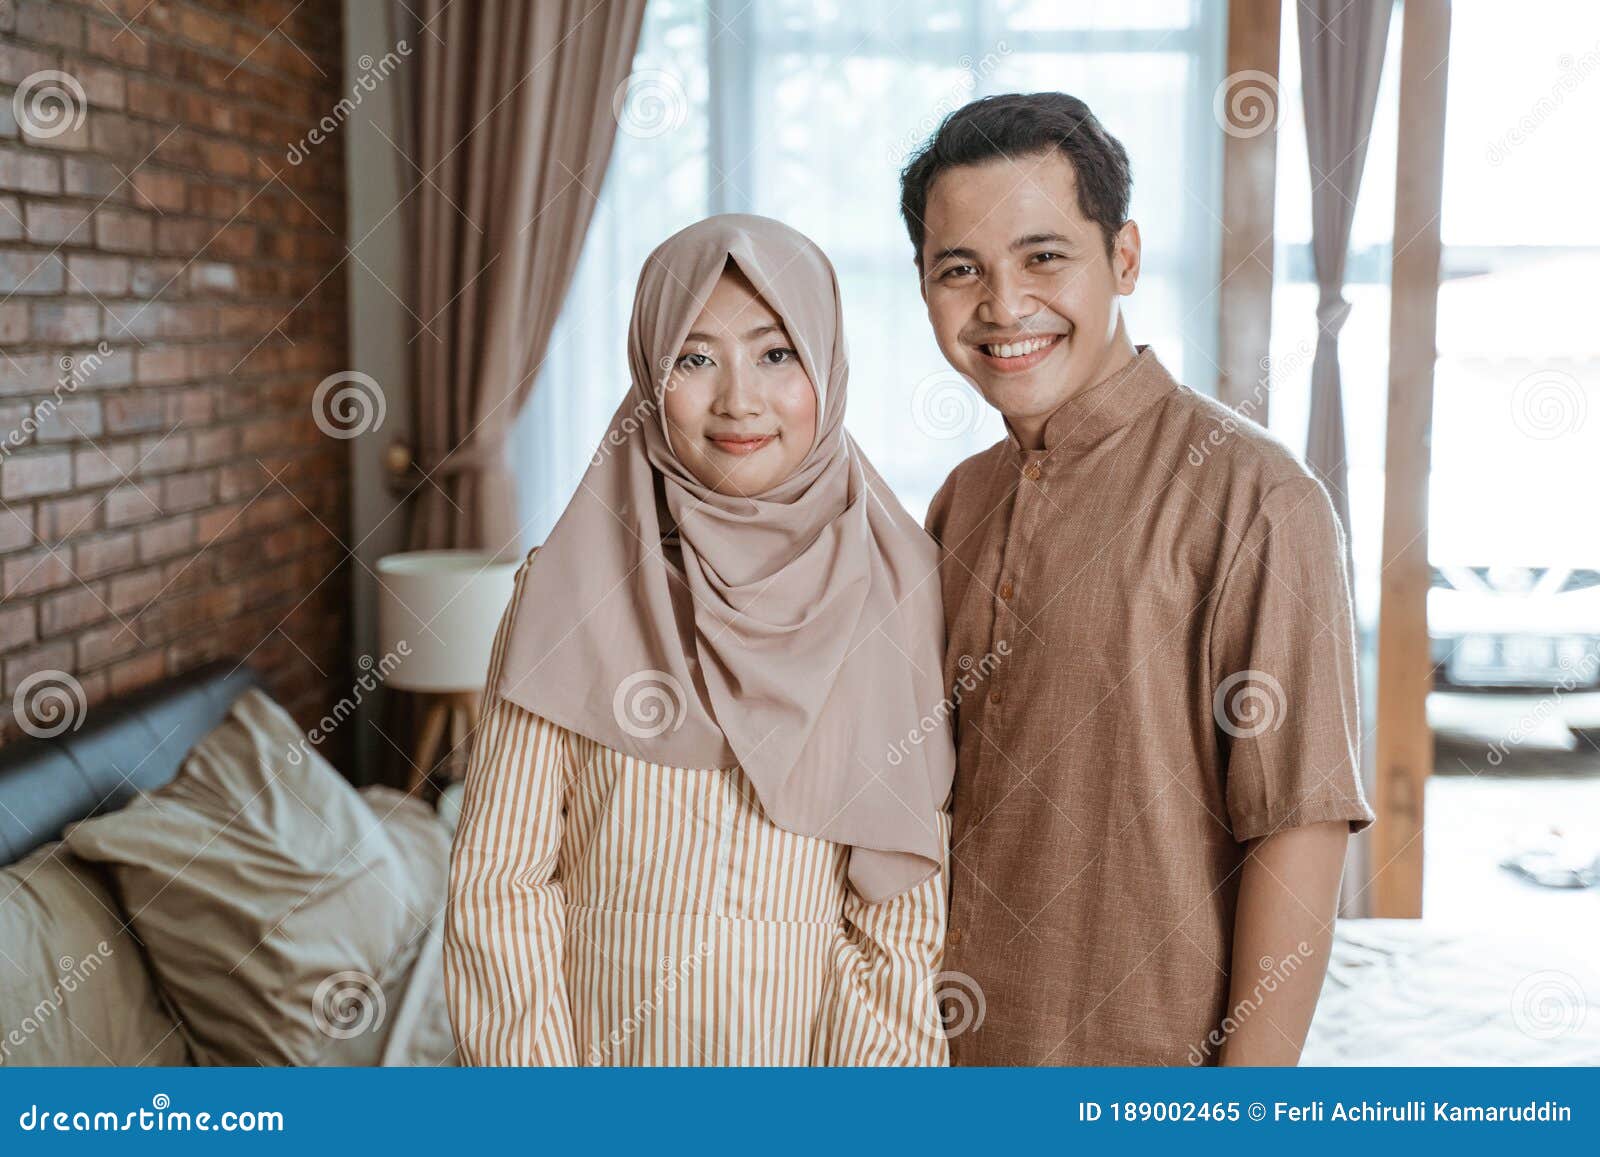 浪漫的穆斯林伴侶, 男人, 夫妻, 浪漫的素材圖案，PSD和PNG圖片免費下載